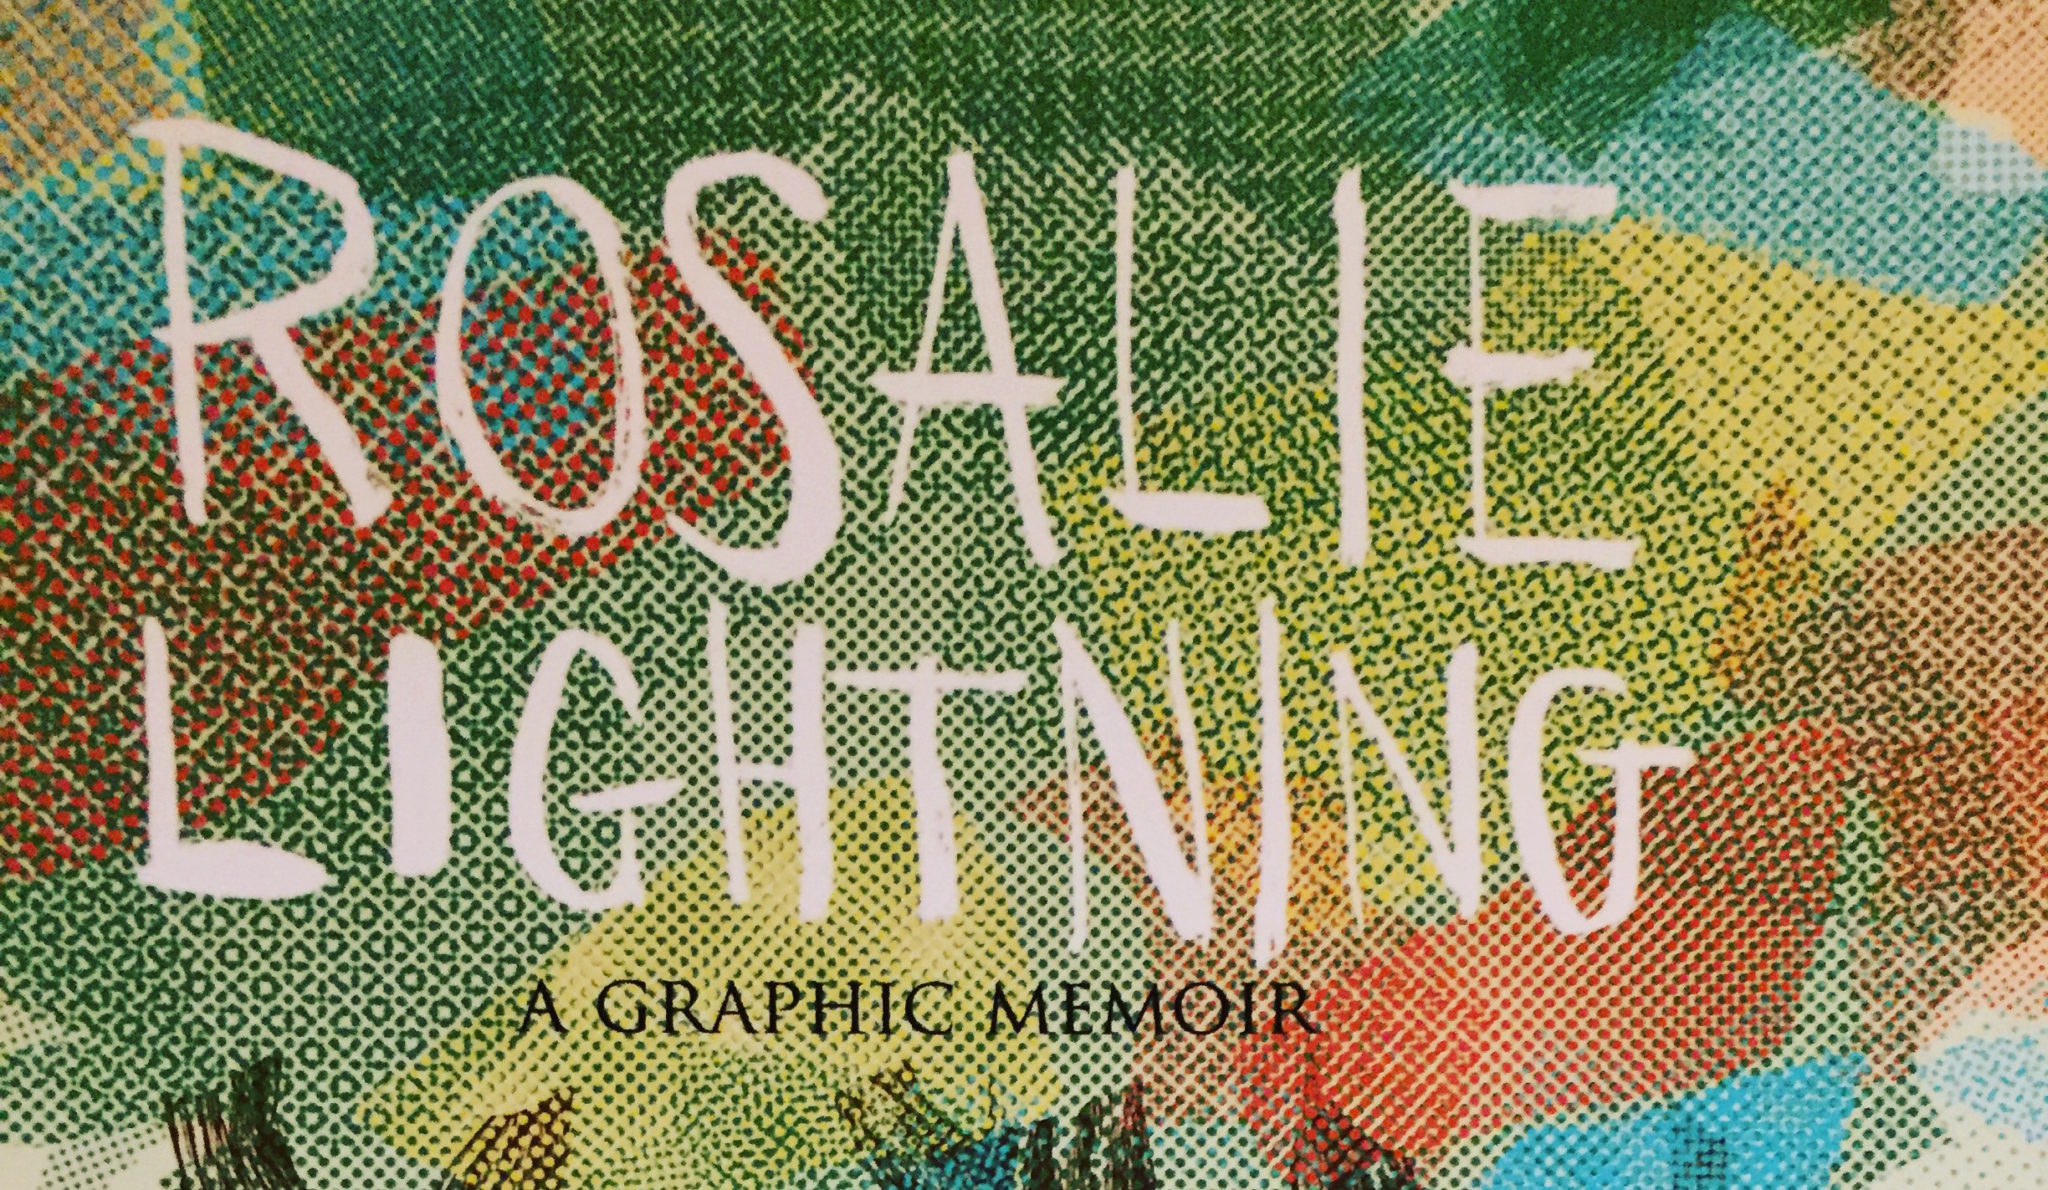 rosalie lightning a graphic memoir